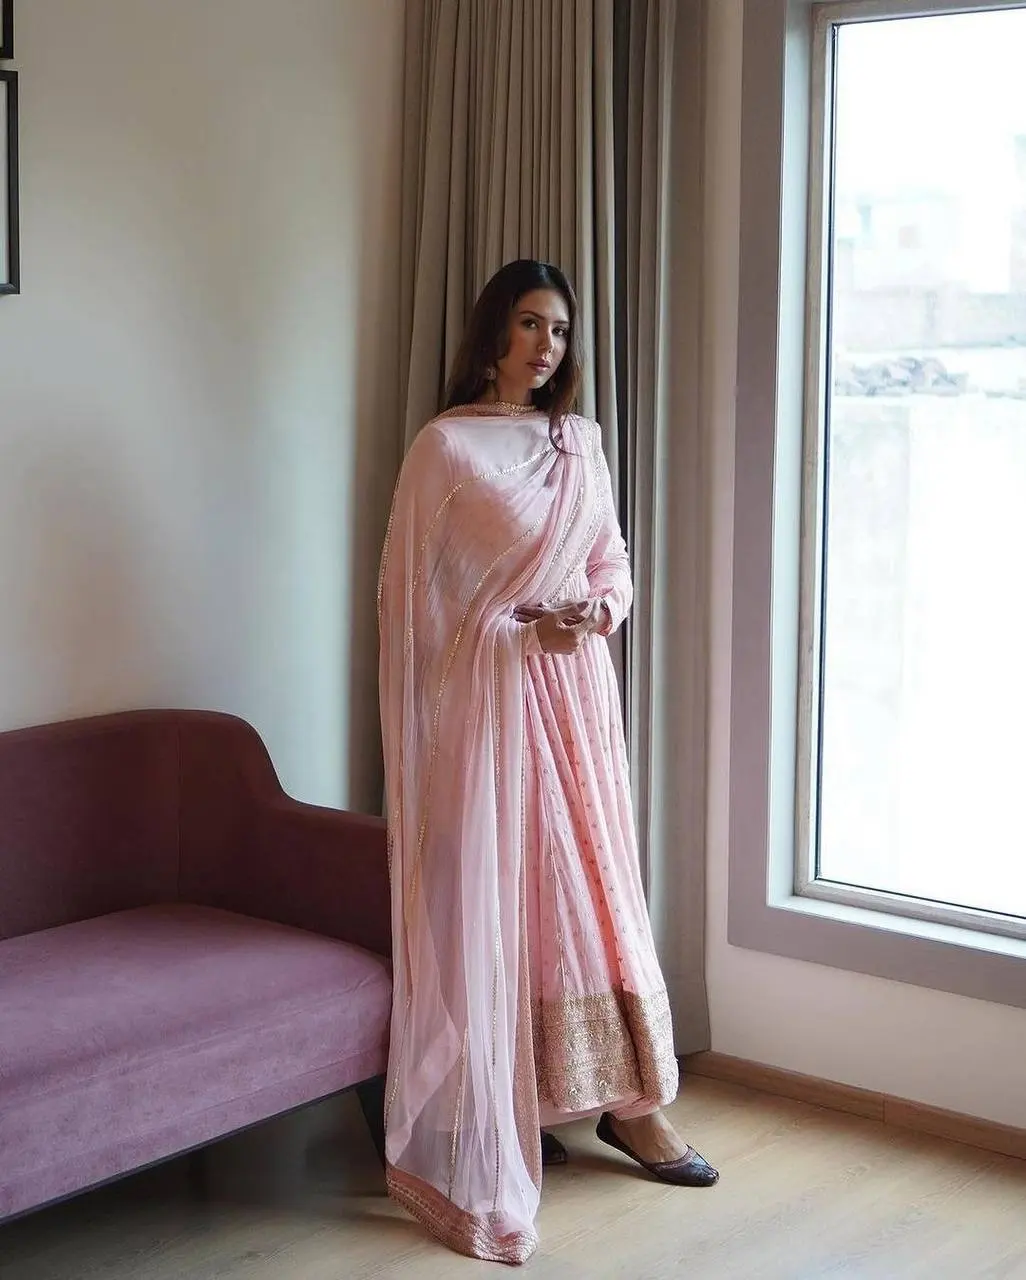 Vestidos de mujer informales y formales indios paquistaníes recién llegados 2021 Salwar kameez Lawn Kurti colección vestido 2020